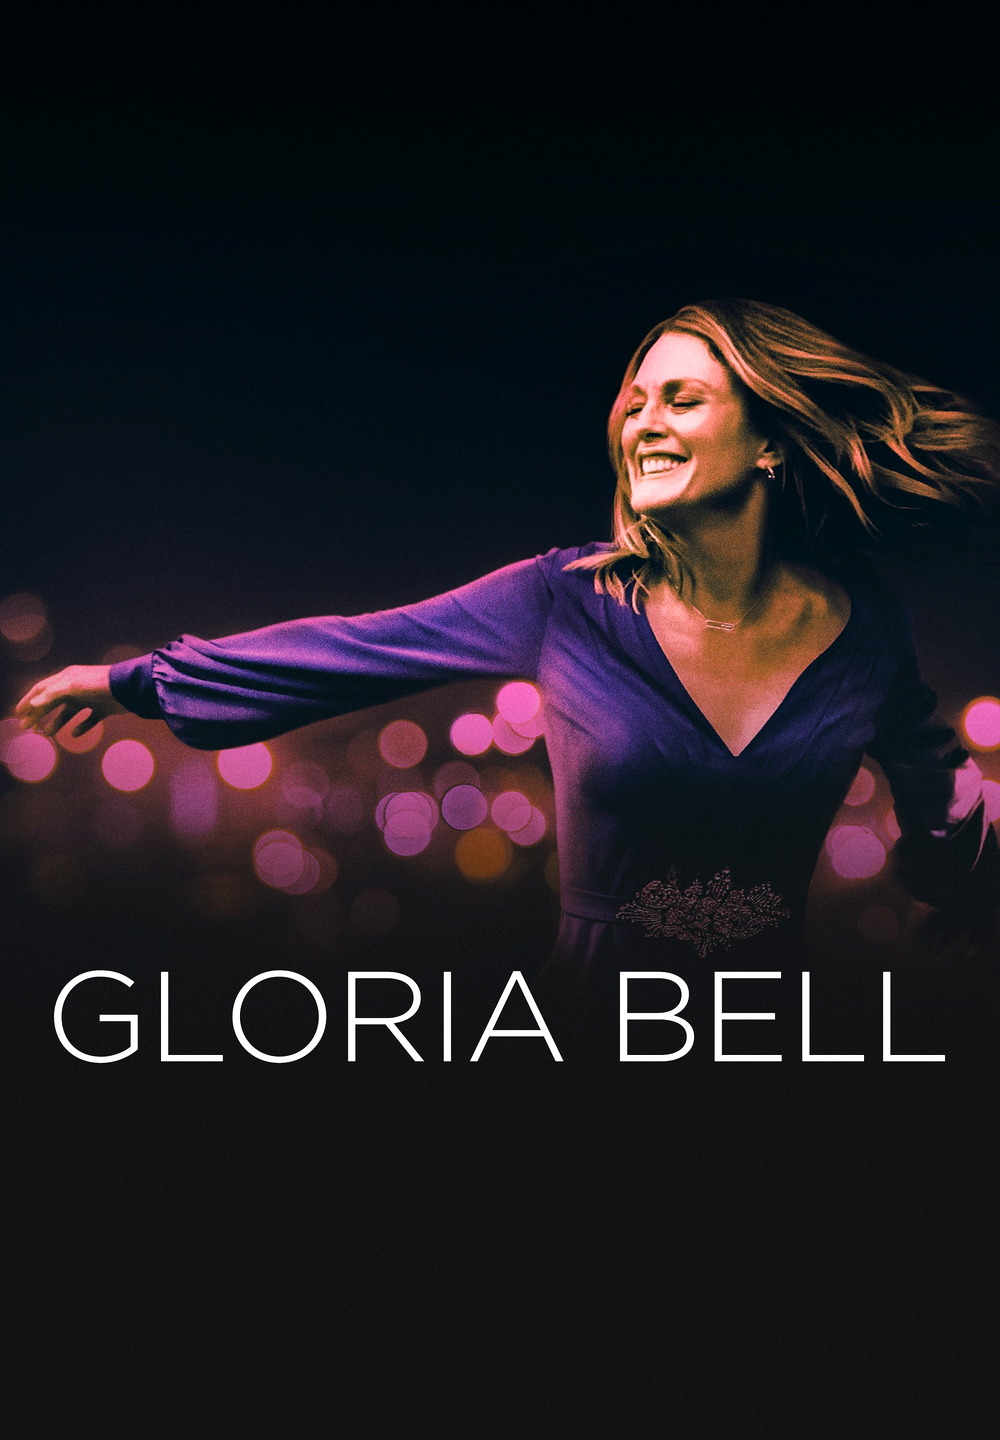 Gloria Bell [HD] (2019)